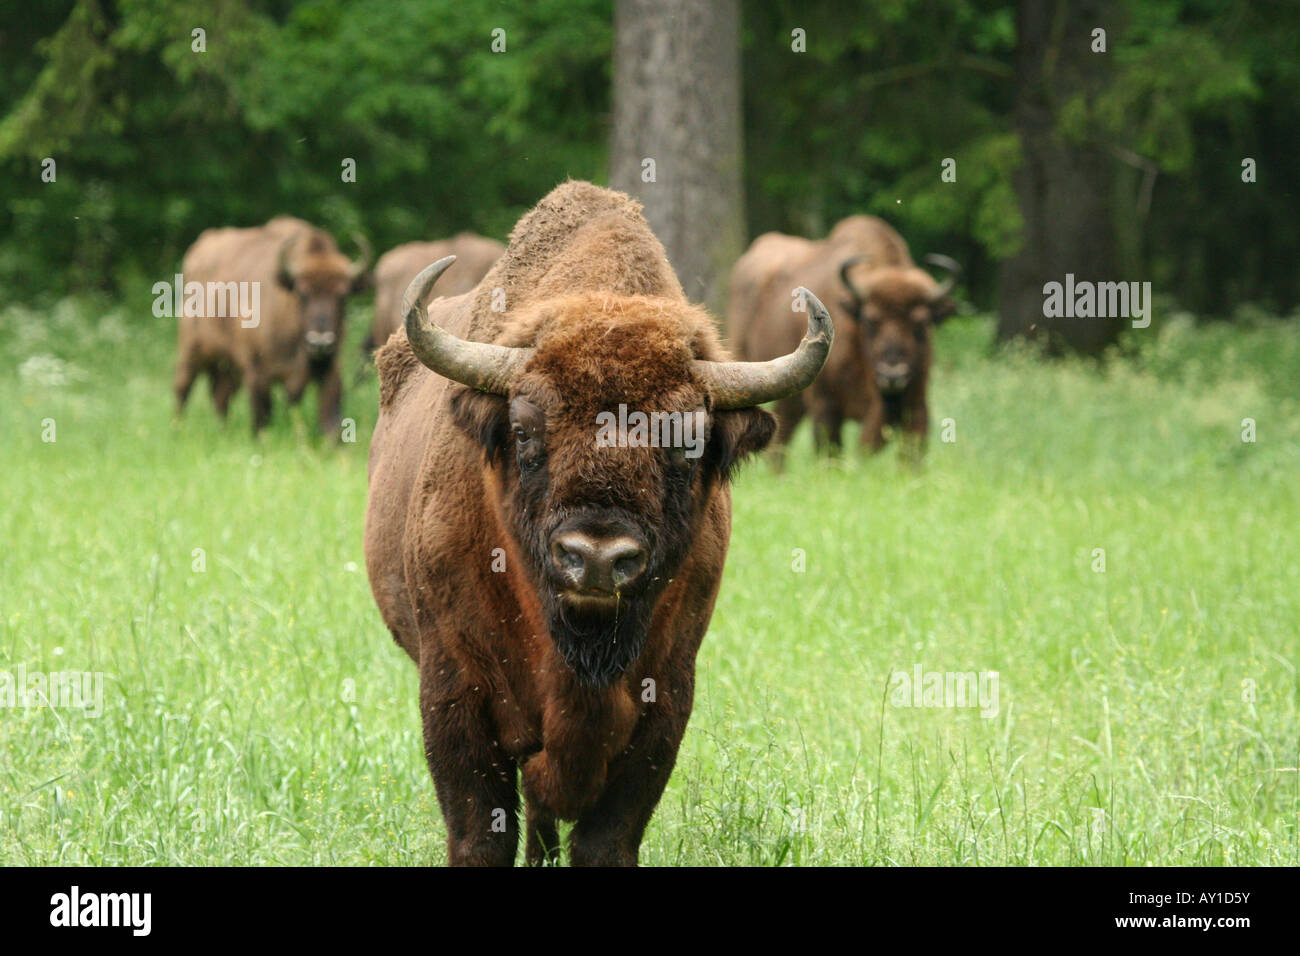 European bison Stock Photo